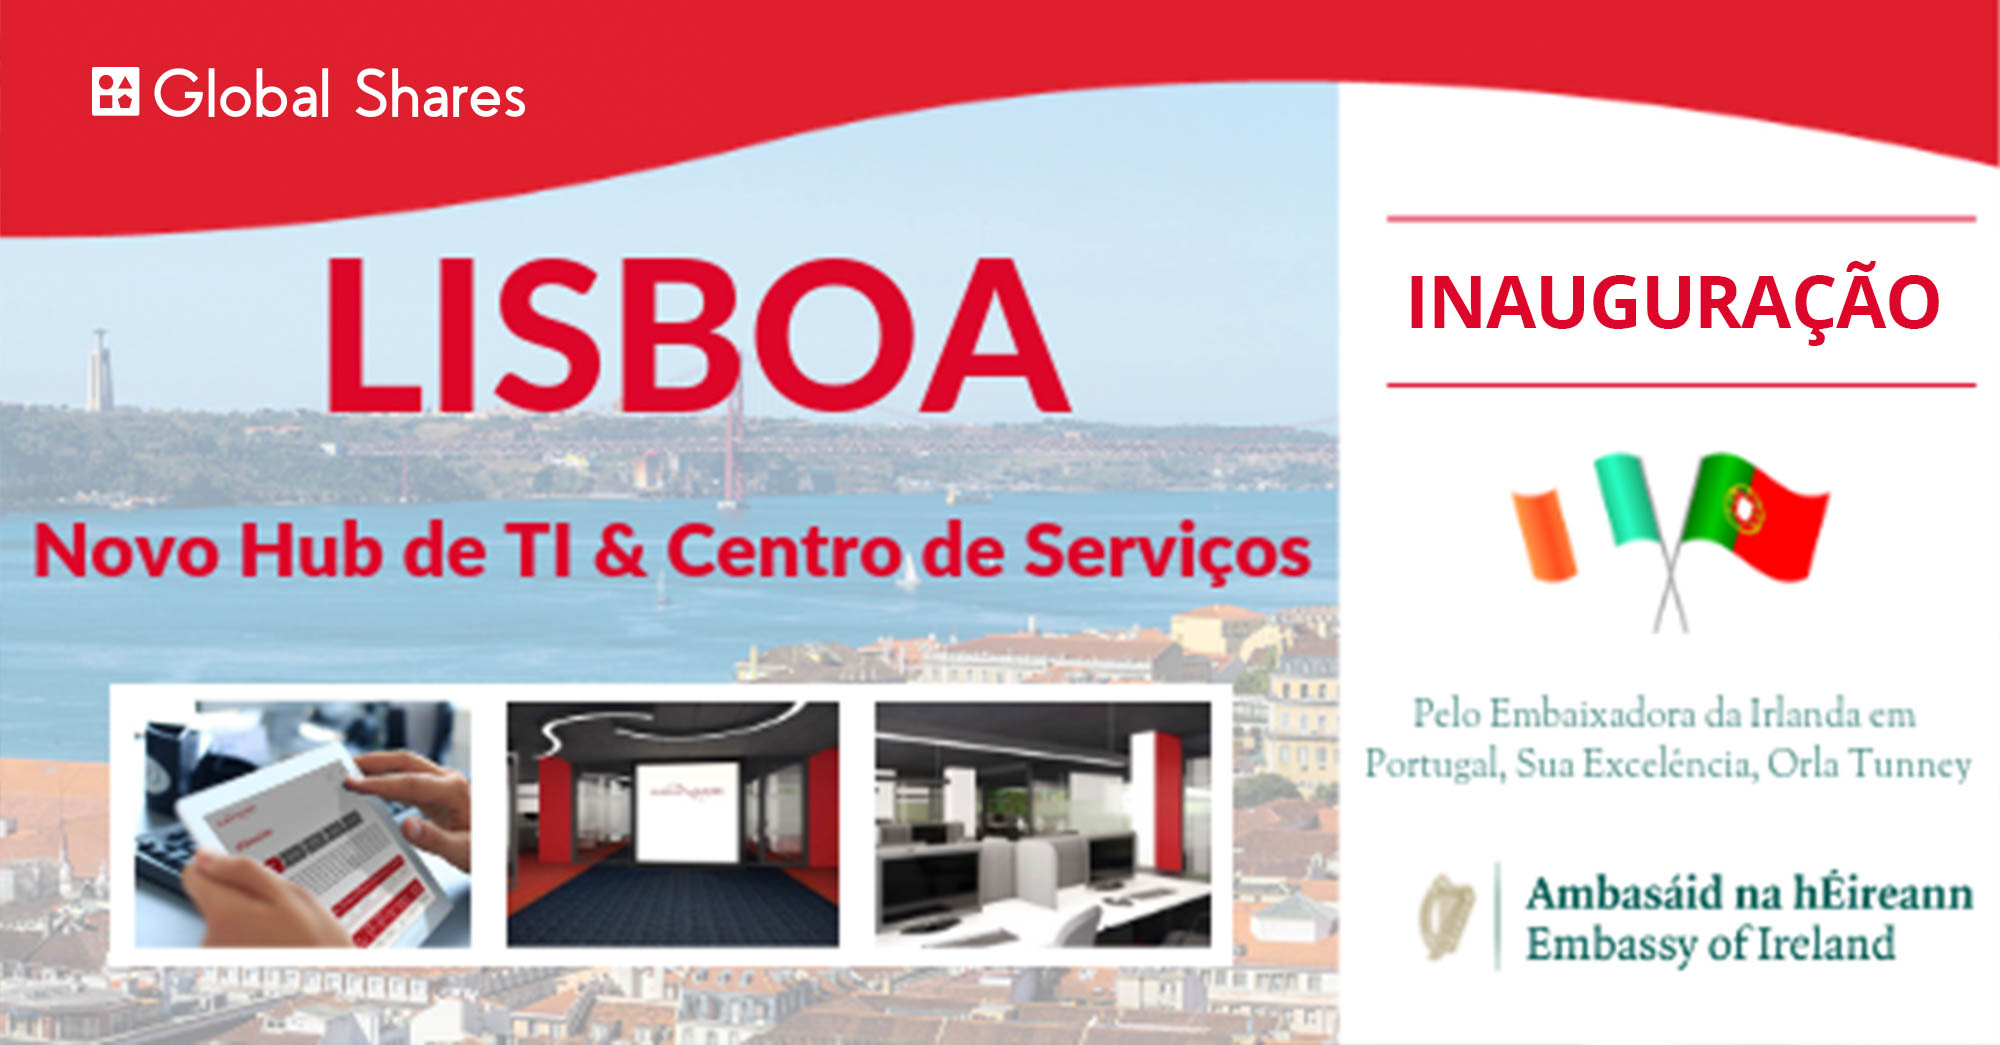 30 empregos de alta tecnologia para o novo centro de TI em Lisboa e centro de prestação de serviços